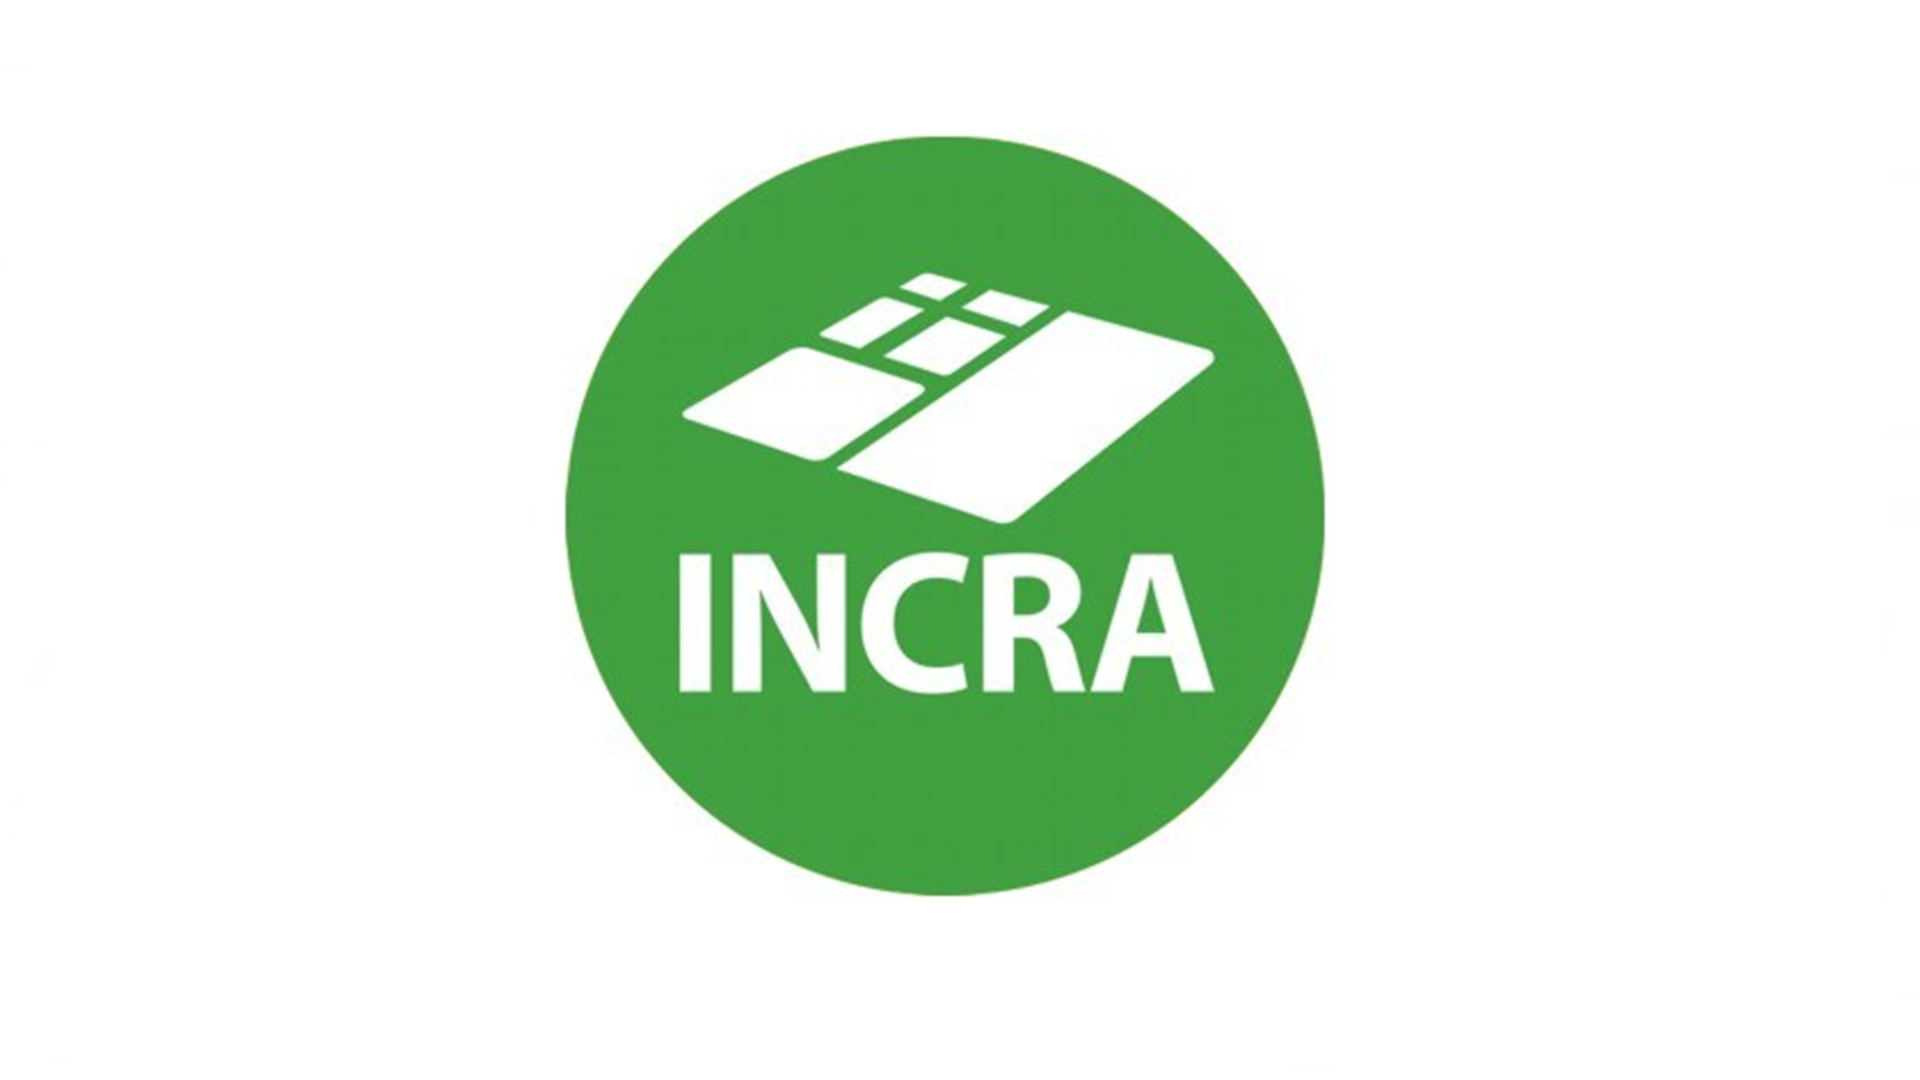 INCRA - Instituto Nacional de Colonização e Reforma Agrária